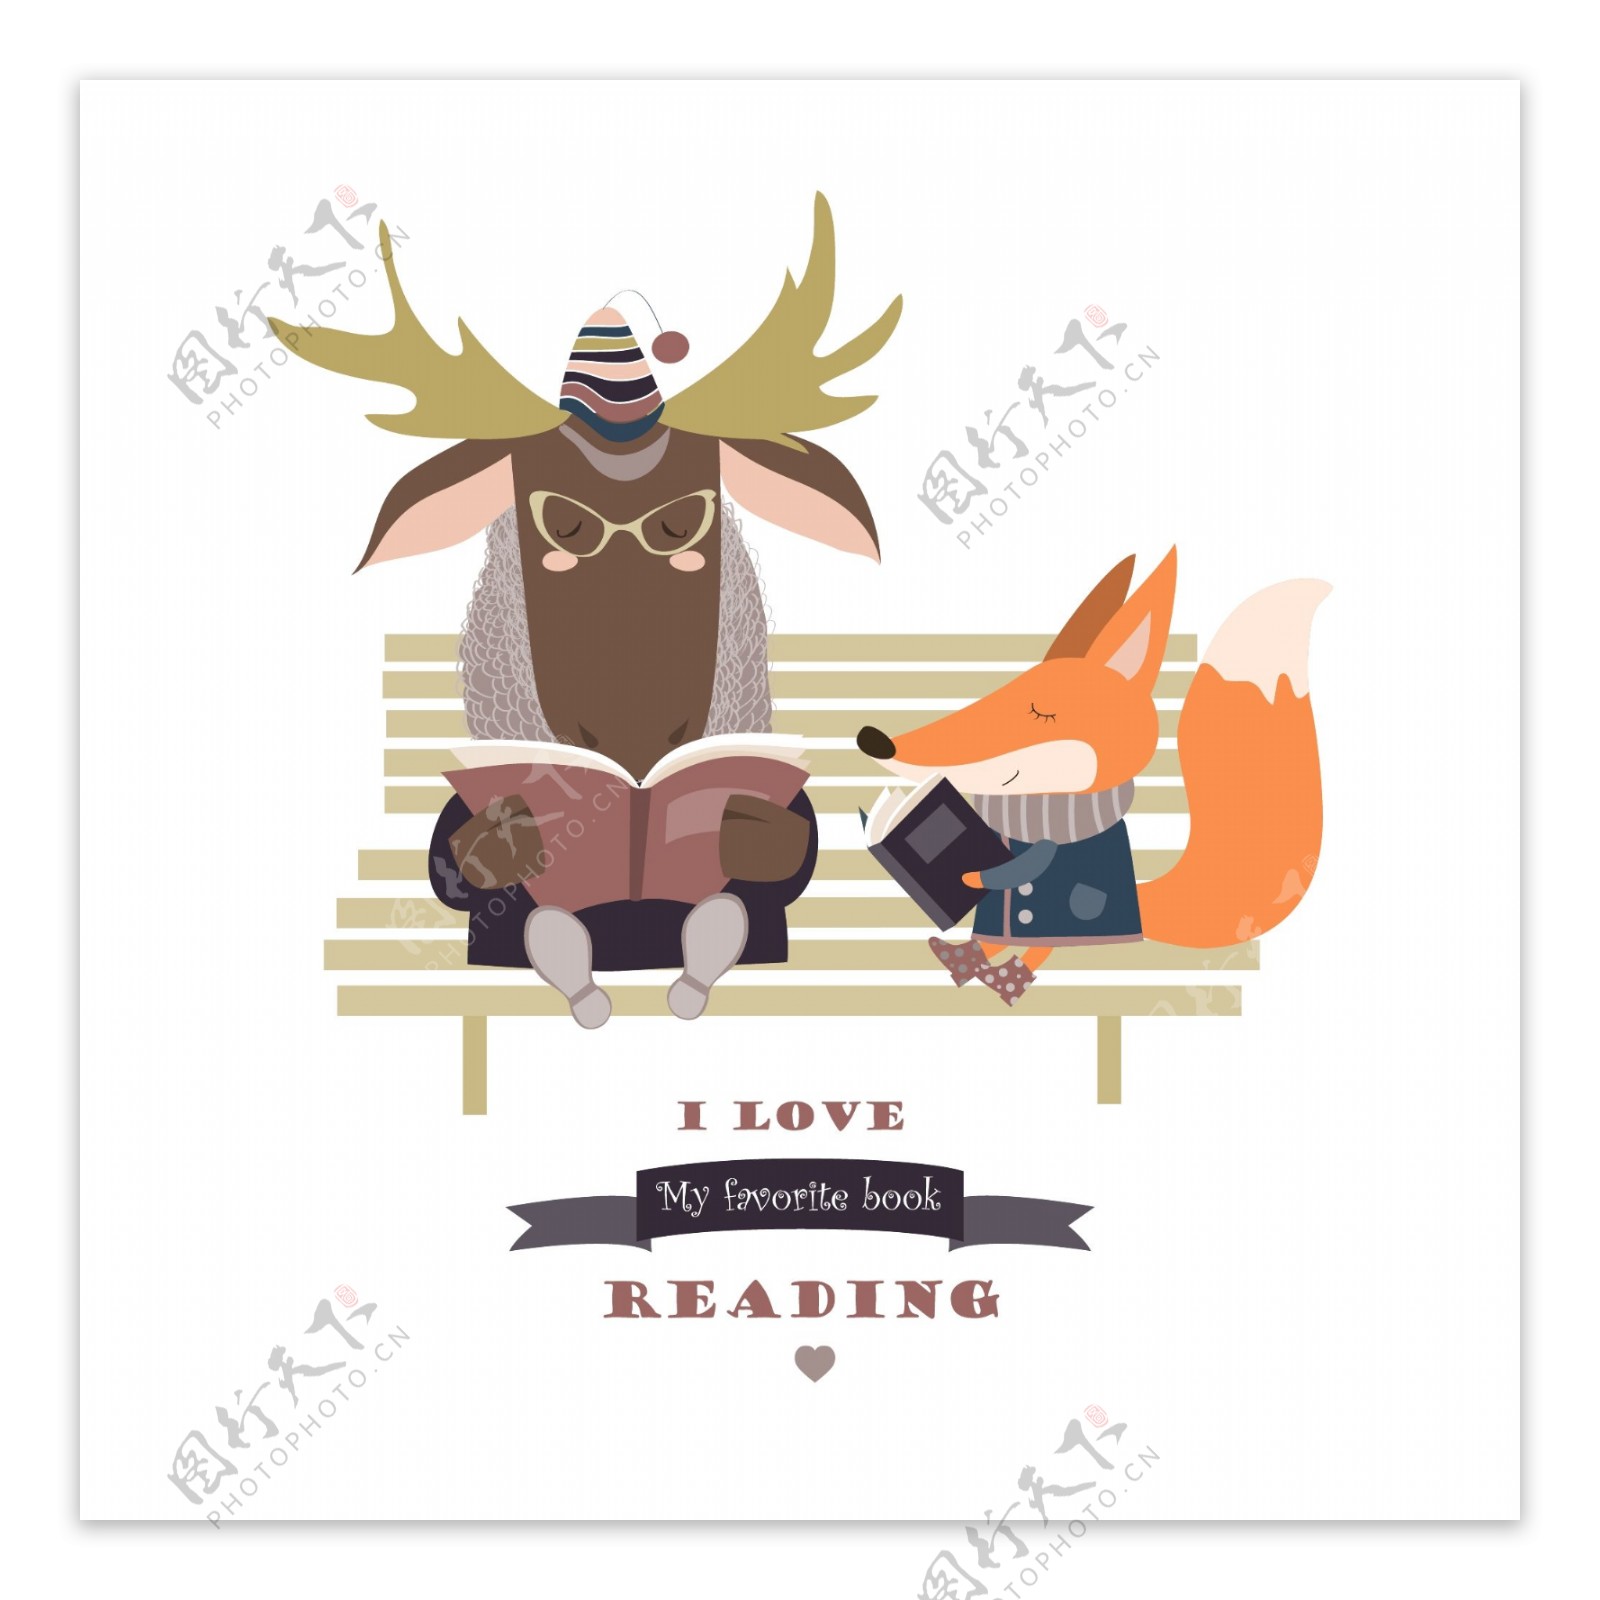 可爱的狐狸和滑稽的麋鹿在长凳上看书